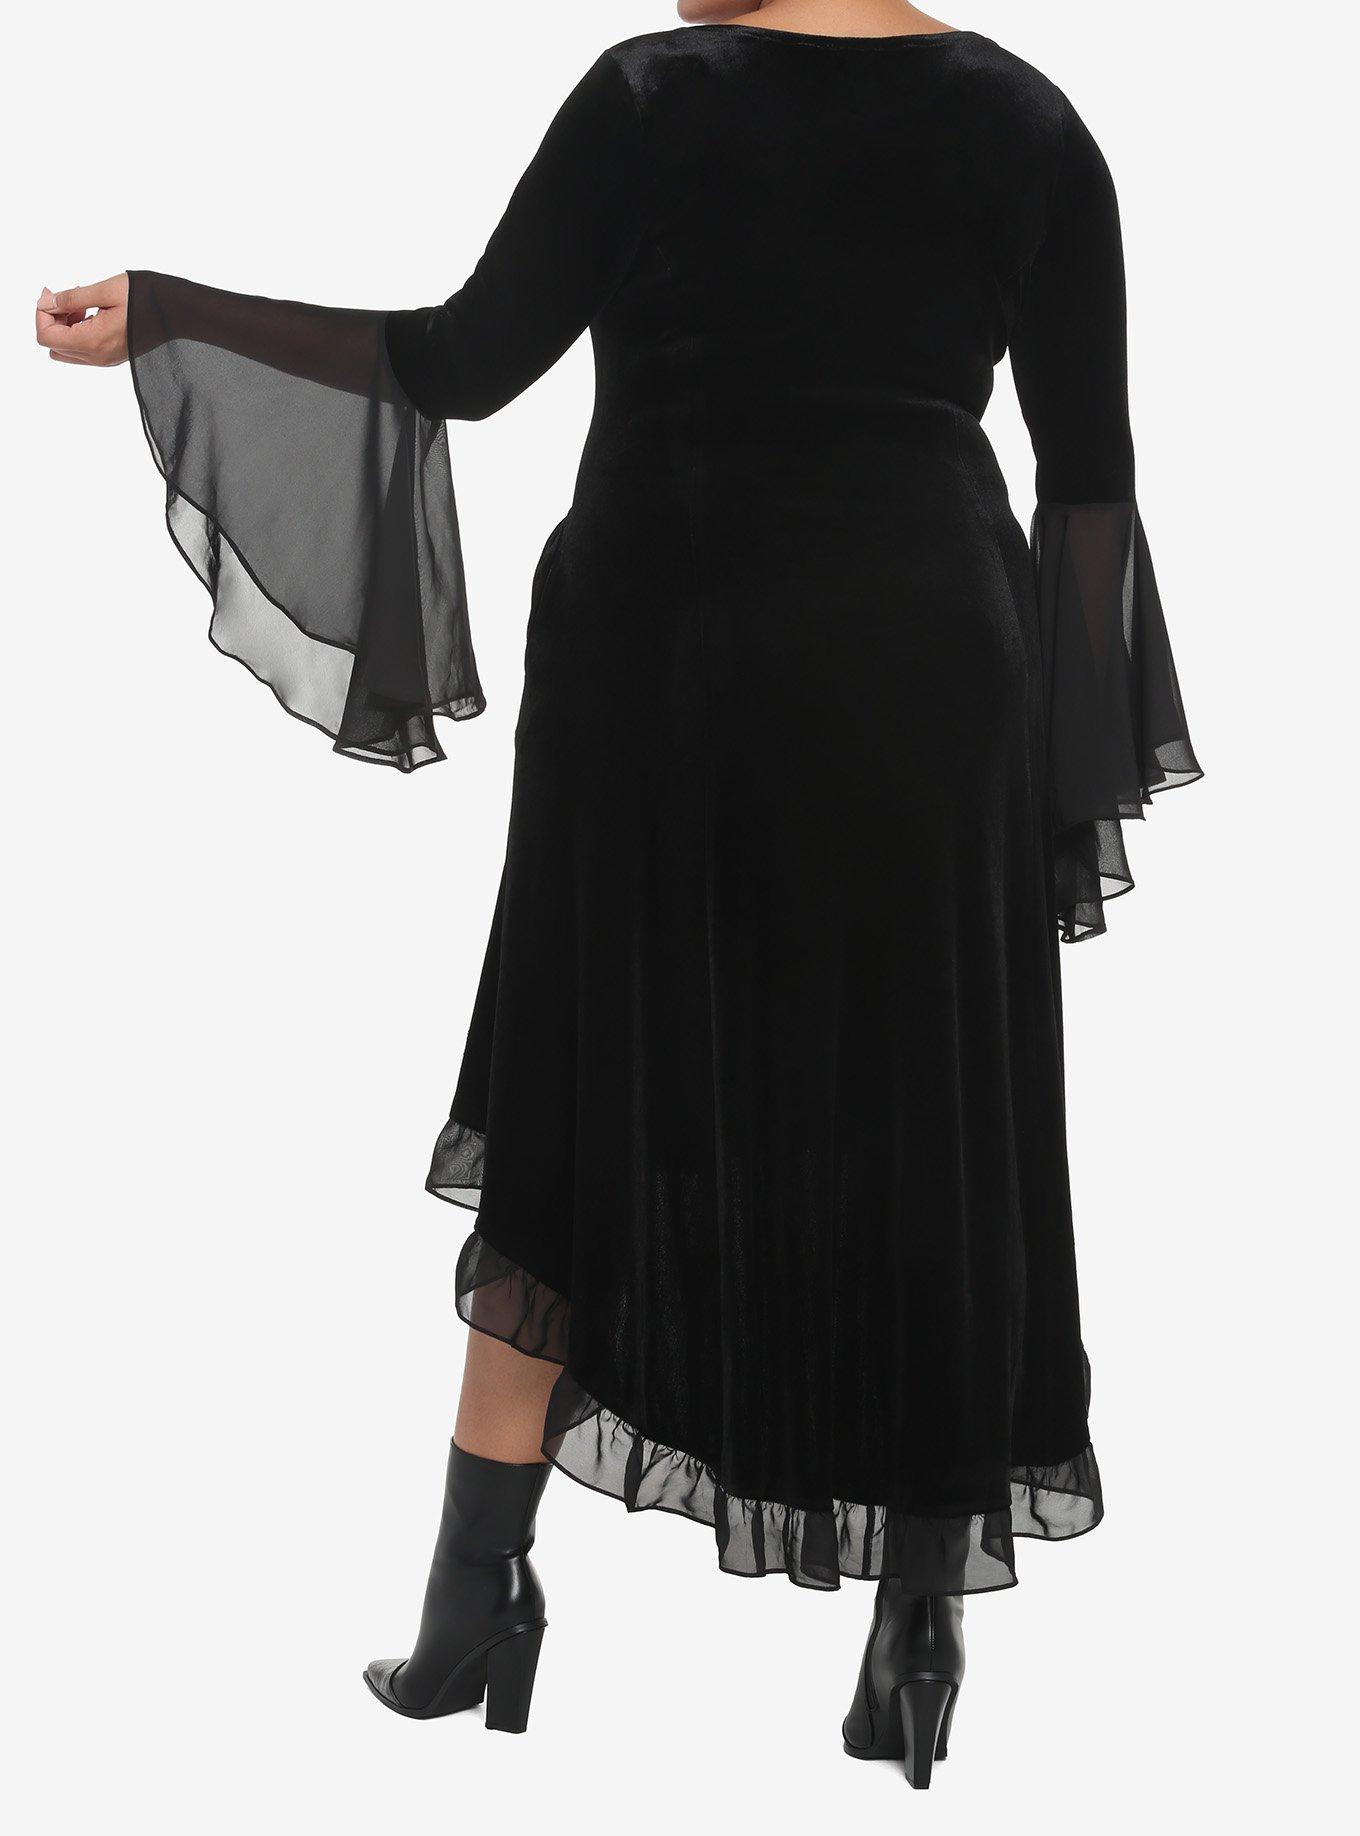 Black Velvet Bell-Sleeve Hi-Low Dress Plus Size, BLACK, alternate